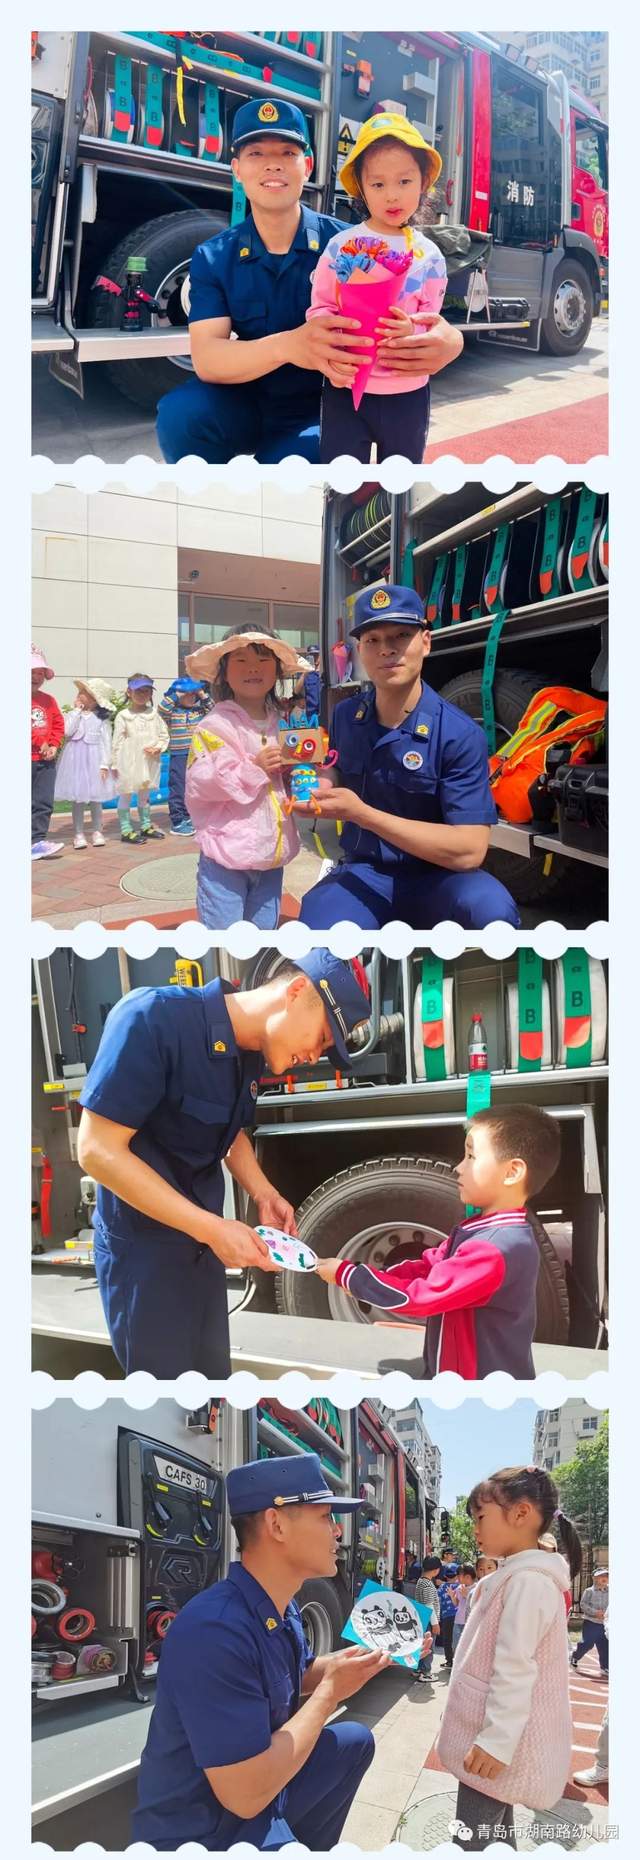 【慧玩慧乐】青岛湖南路幼儿园金茂湾分园消防安全教育实践活动